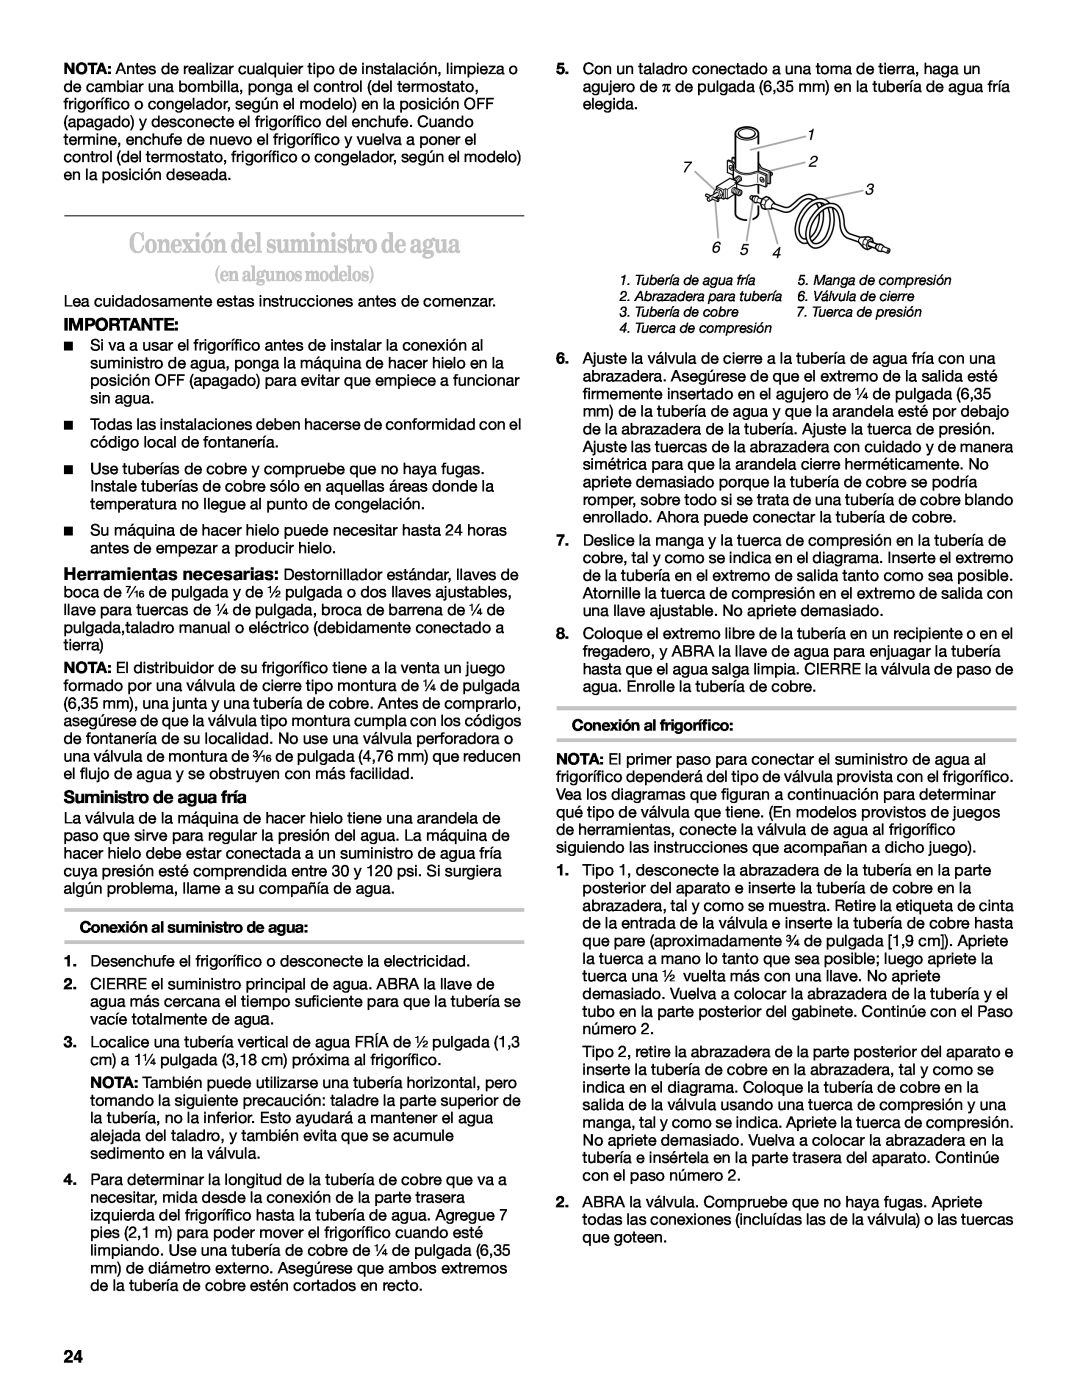 Whirlpool 2218585 manual Conexión del suministro de agua, en algunos modelos, Importante, Suministro de agua fría 